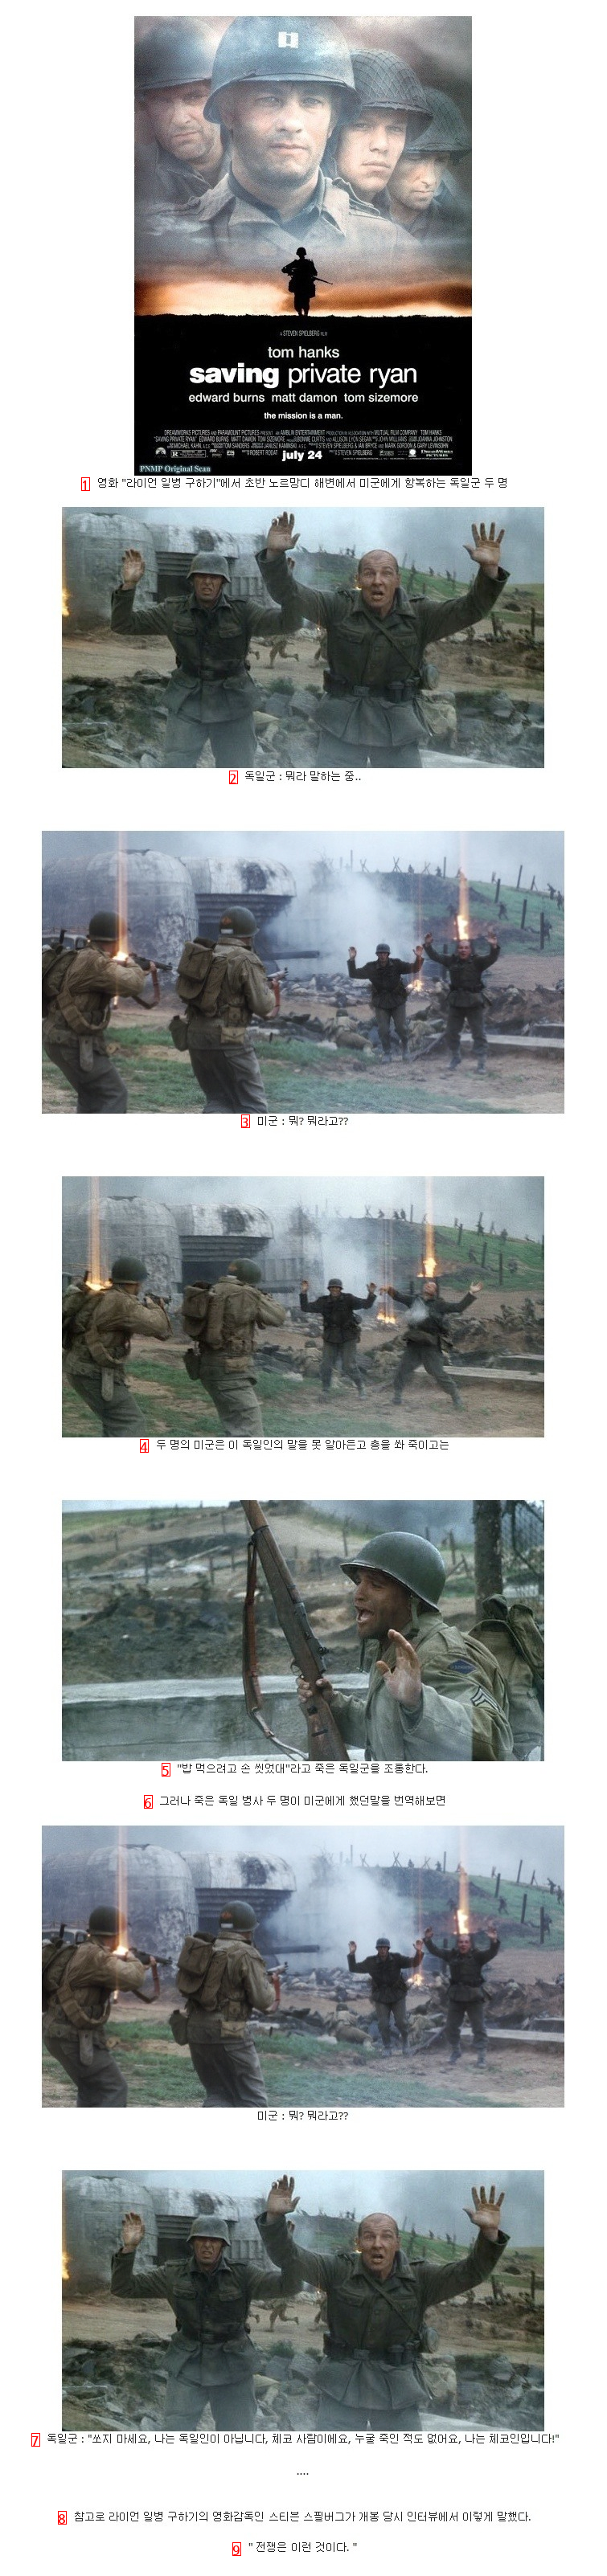 전쟁의 참상을 보여준 영화 장면